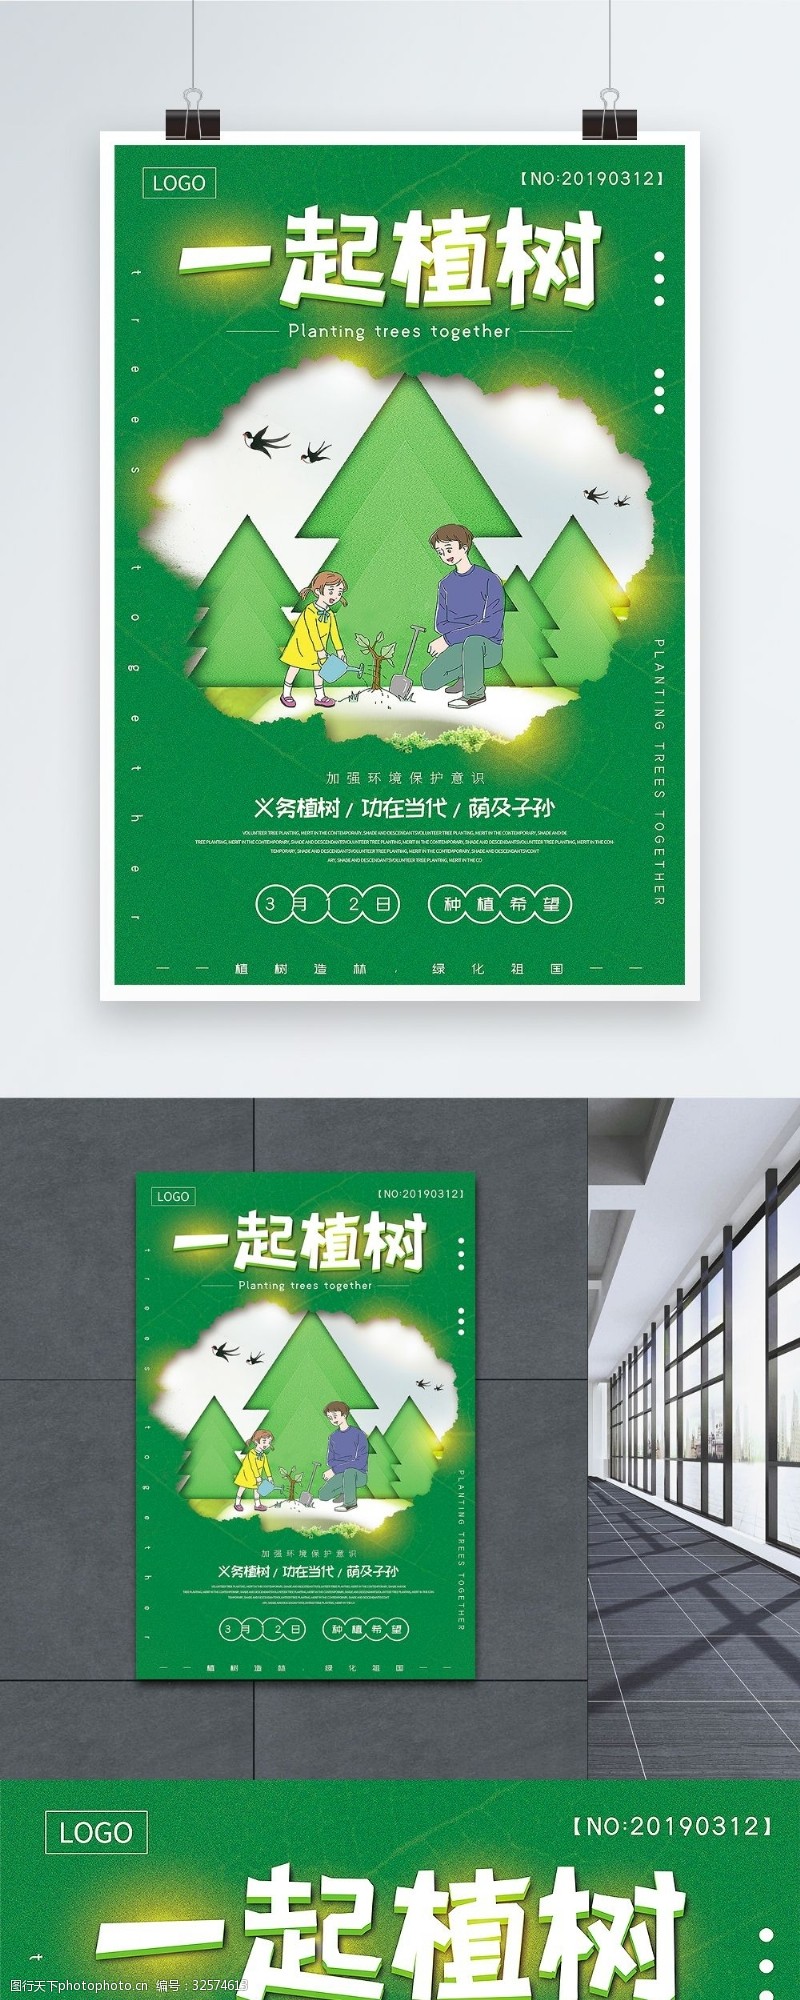 3月12日绿色植树节一起植树公益宣传海报